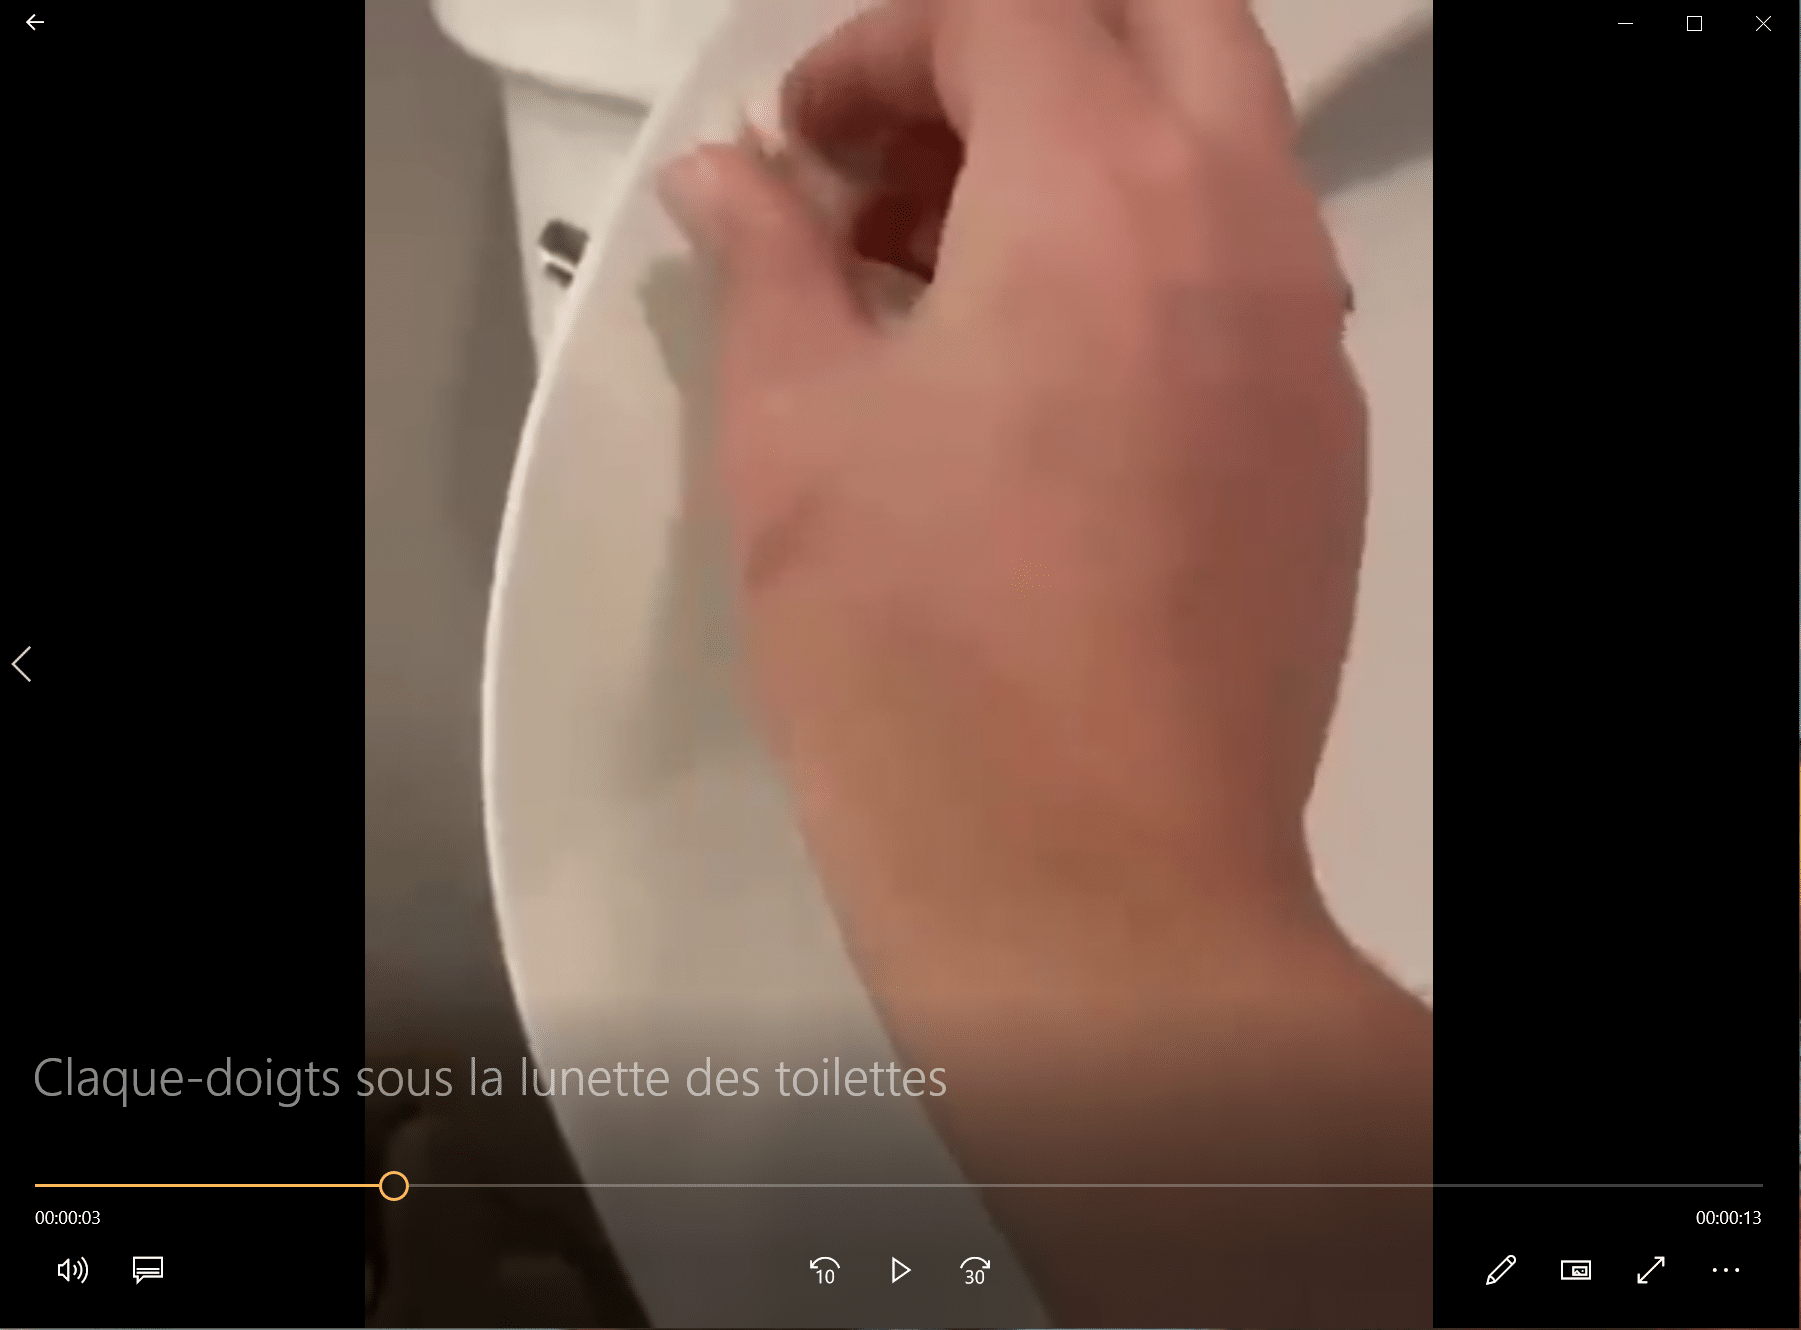 Claque-doigts sous la lunette des toilettes